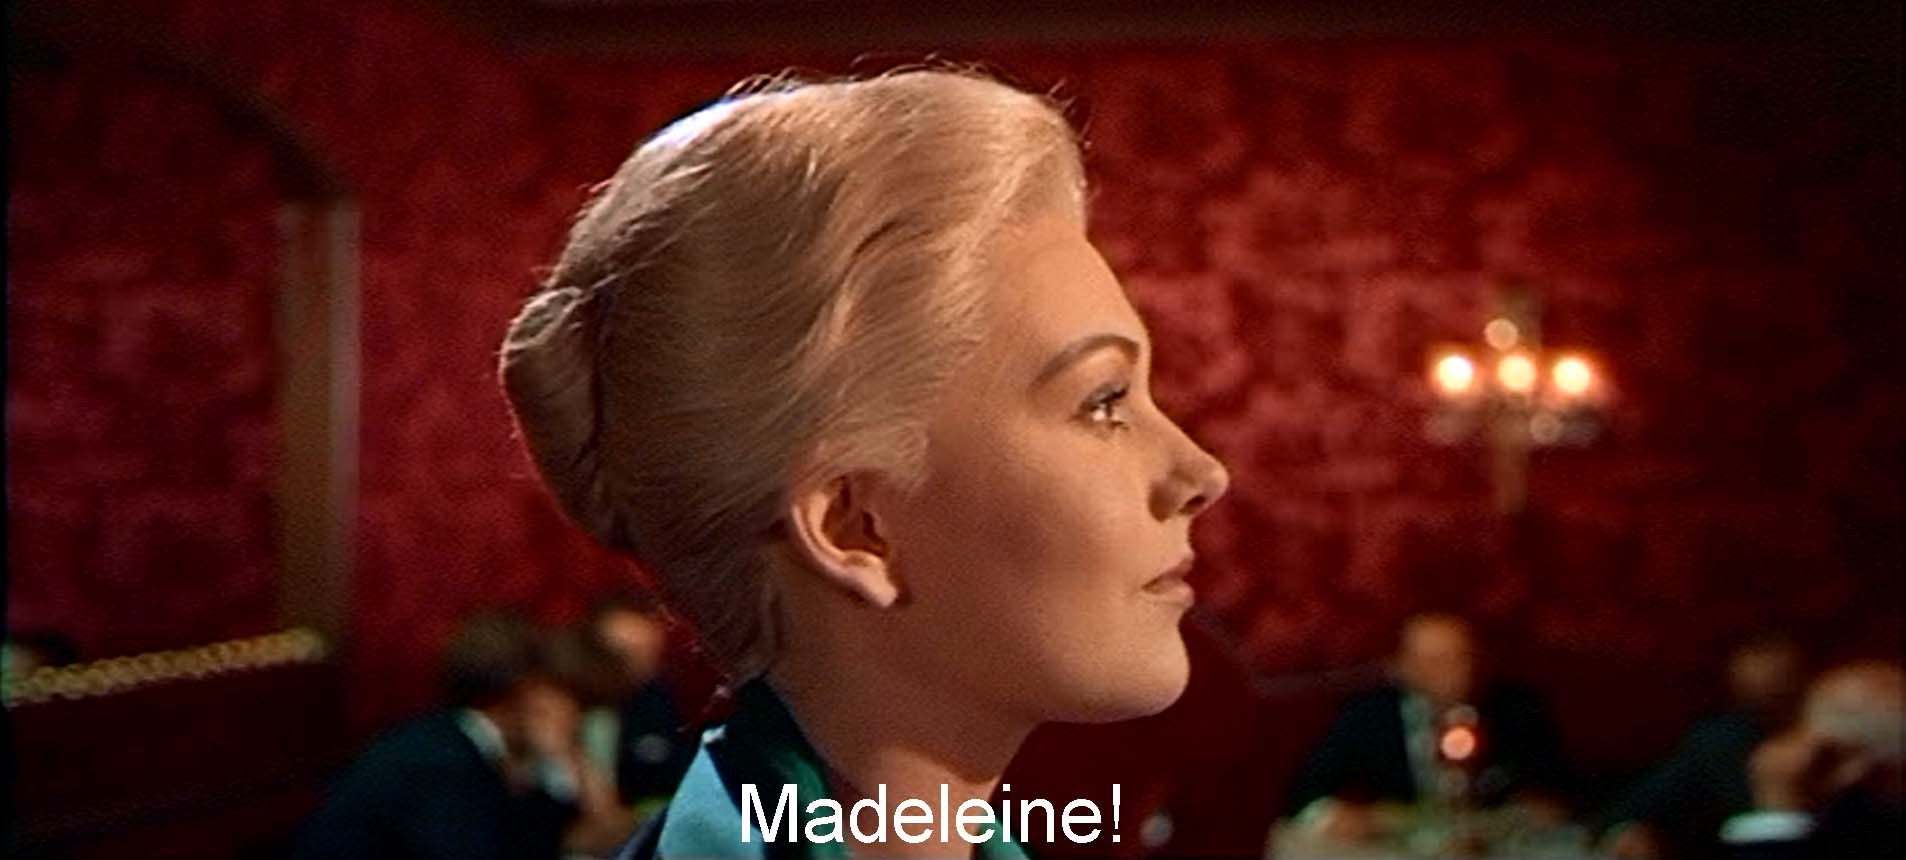 Madeleine!